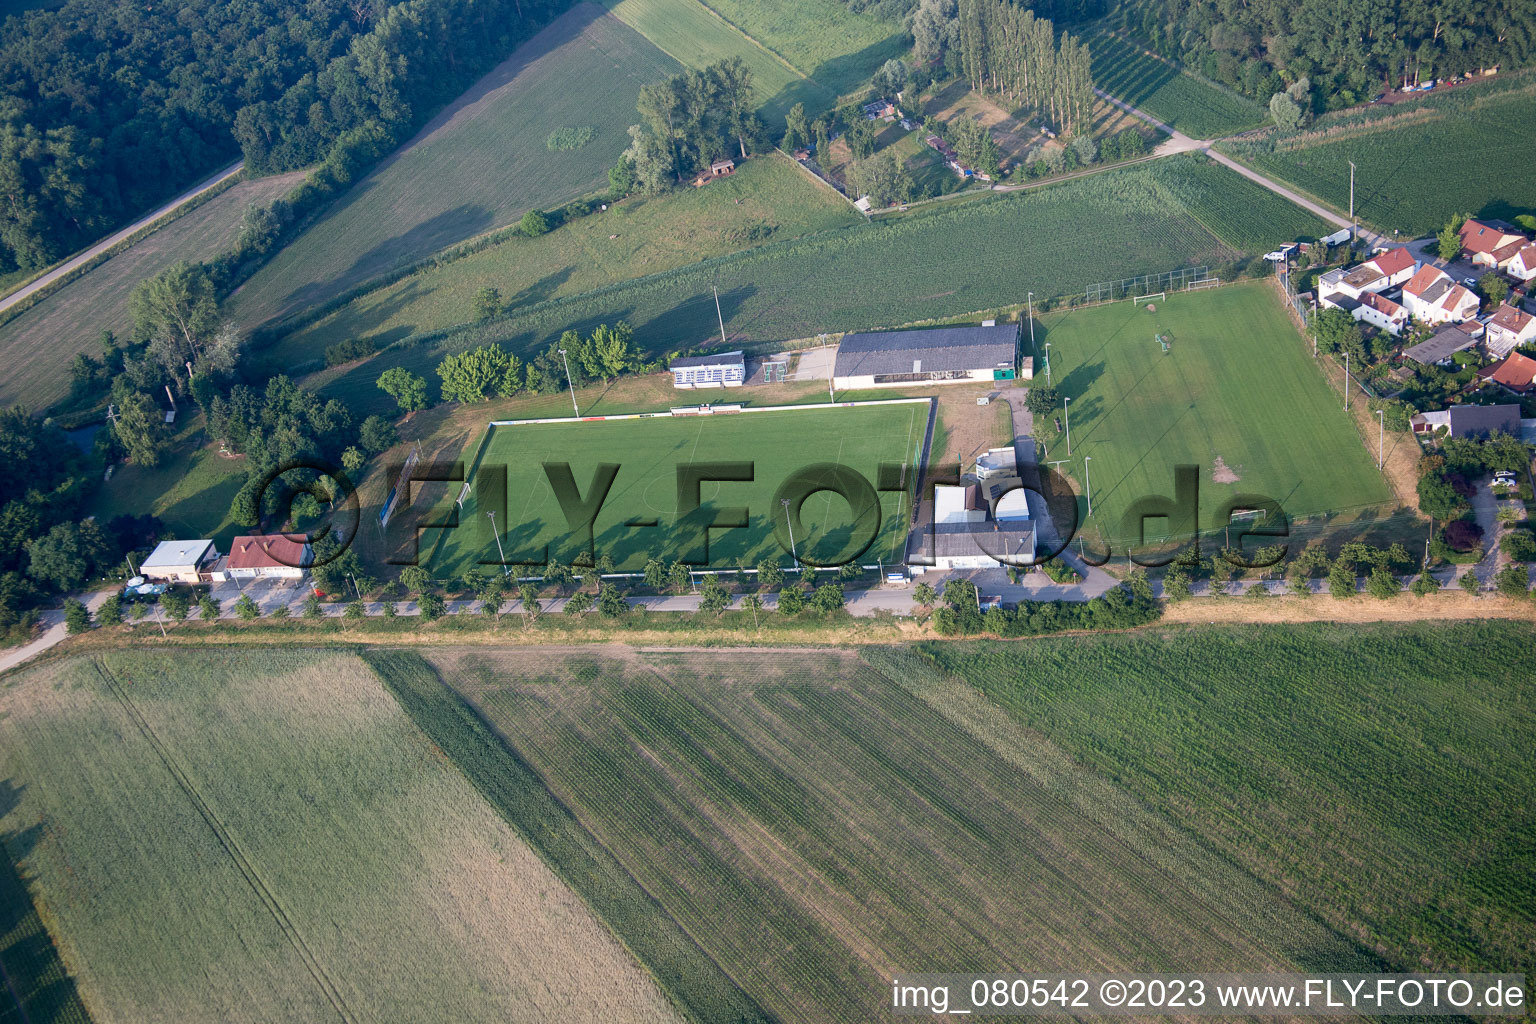 Vue aérienne de Terrain de sport TuS 1914 eV à le quartier Mechtersheim in Römerberg dans le département Rhénanie-Palatinat, Allemagne